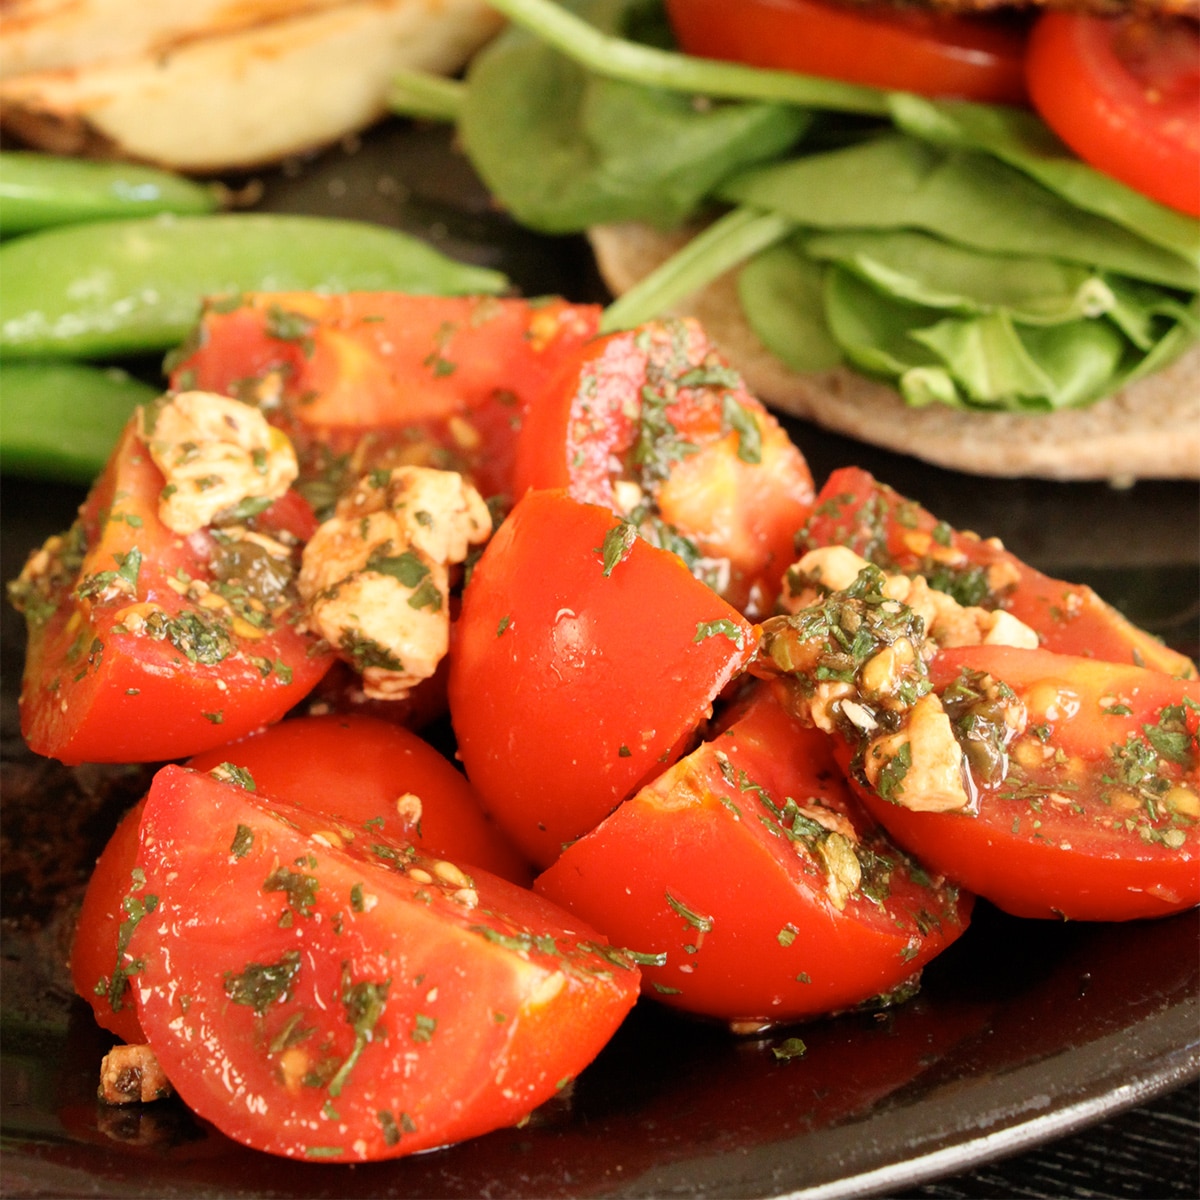 tomato and feta salad featured